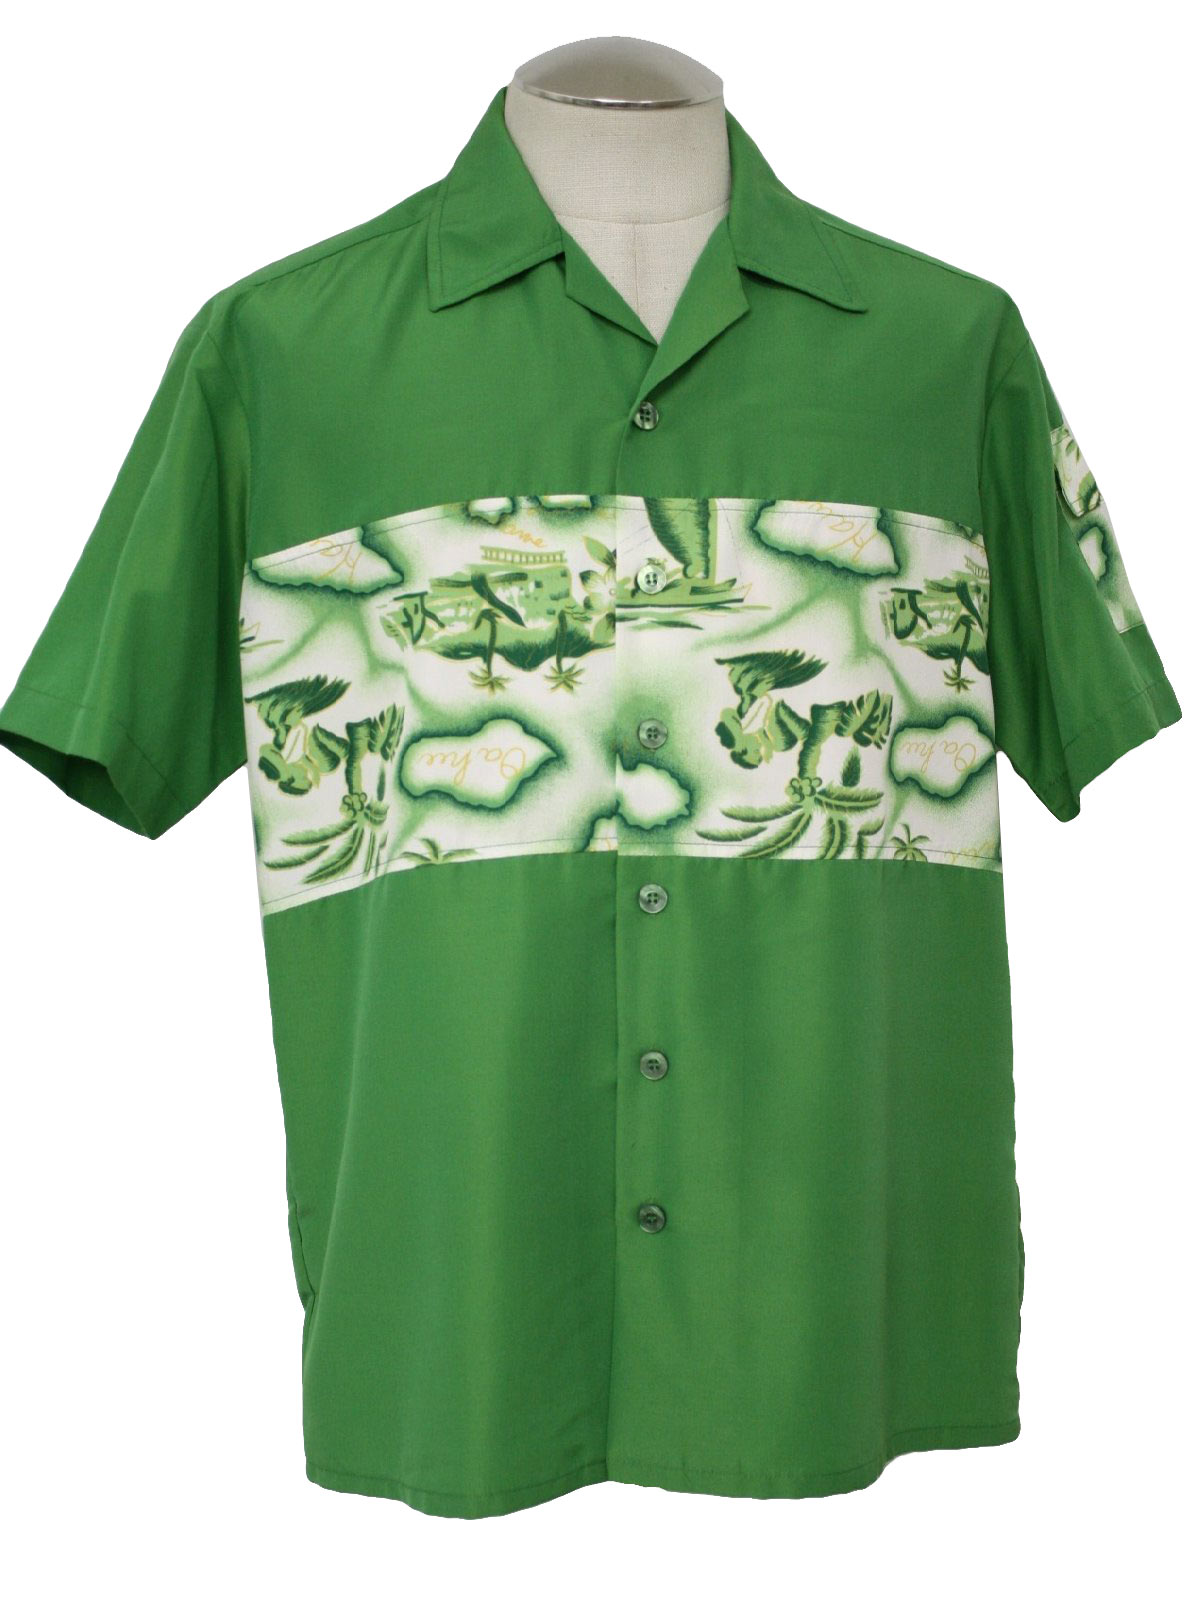 Vintage Kennington Eighties Hawaiian Shirt: 80s style (made more ...